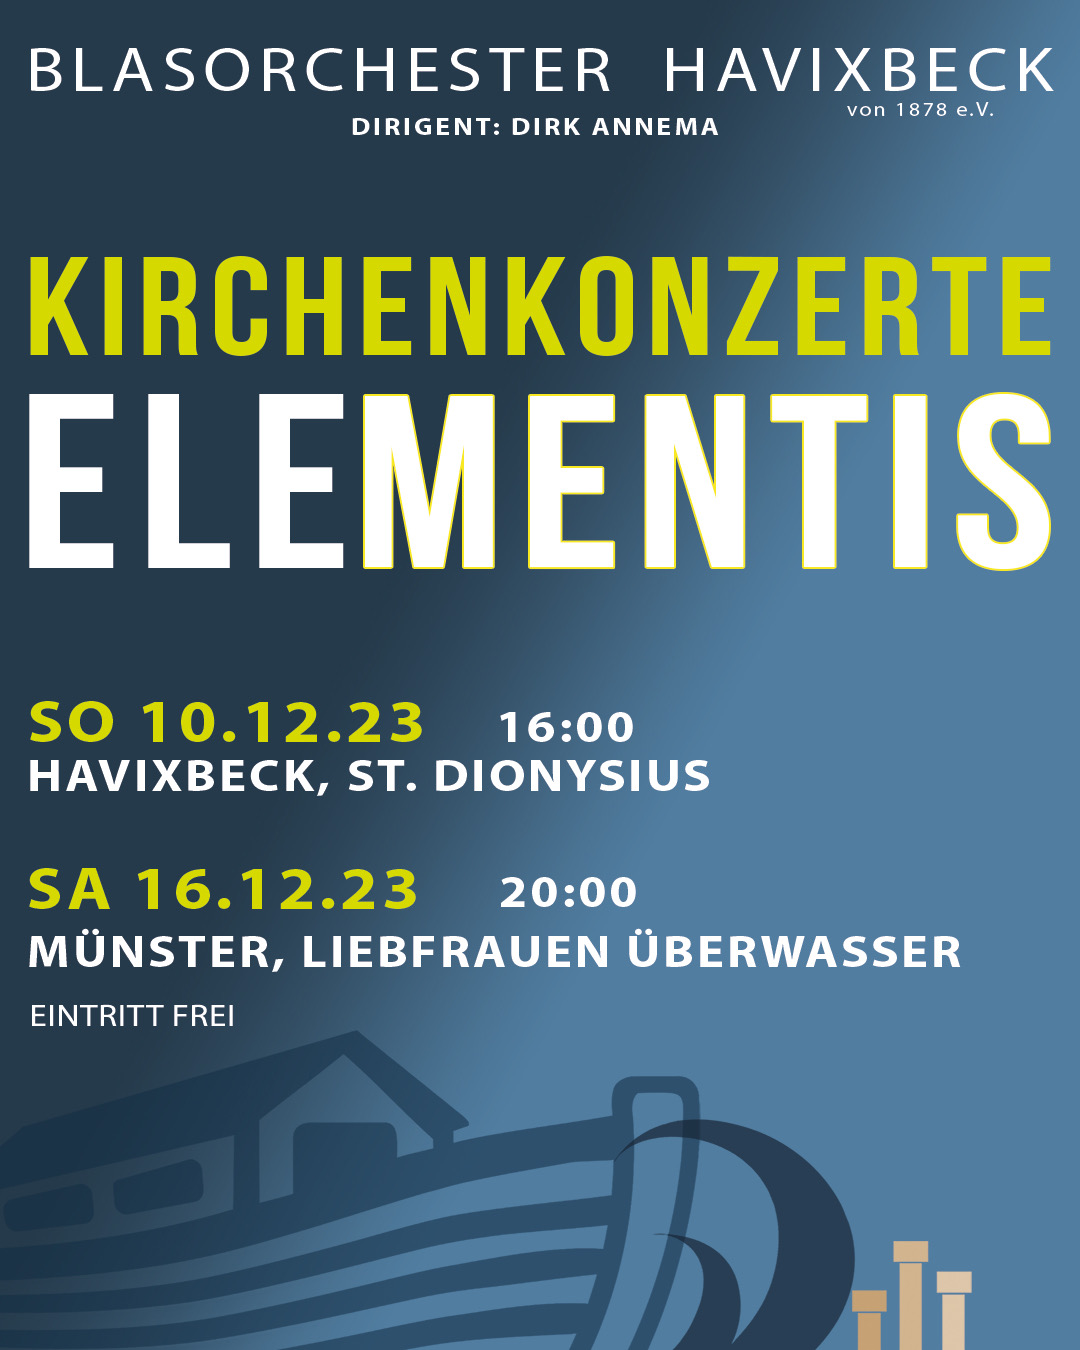 Kirchenkonzert ELEMENTIS - Blasorchester Havixbeck